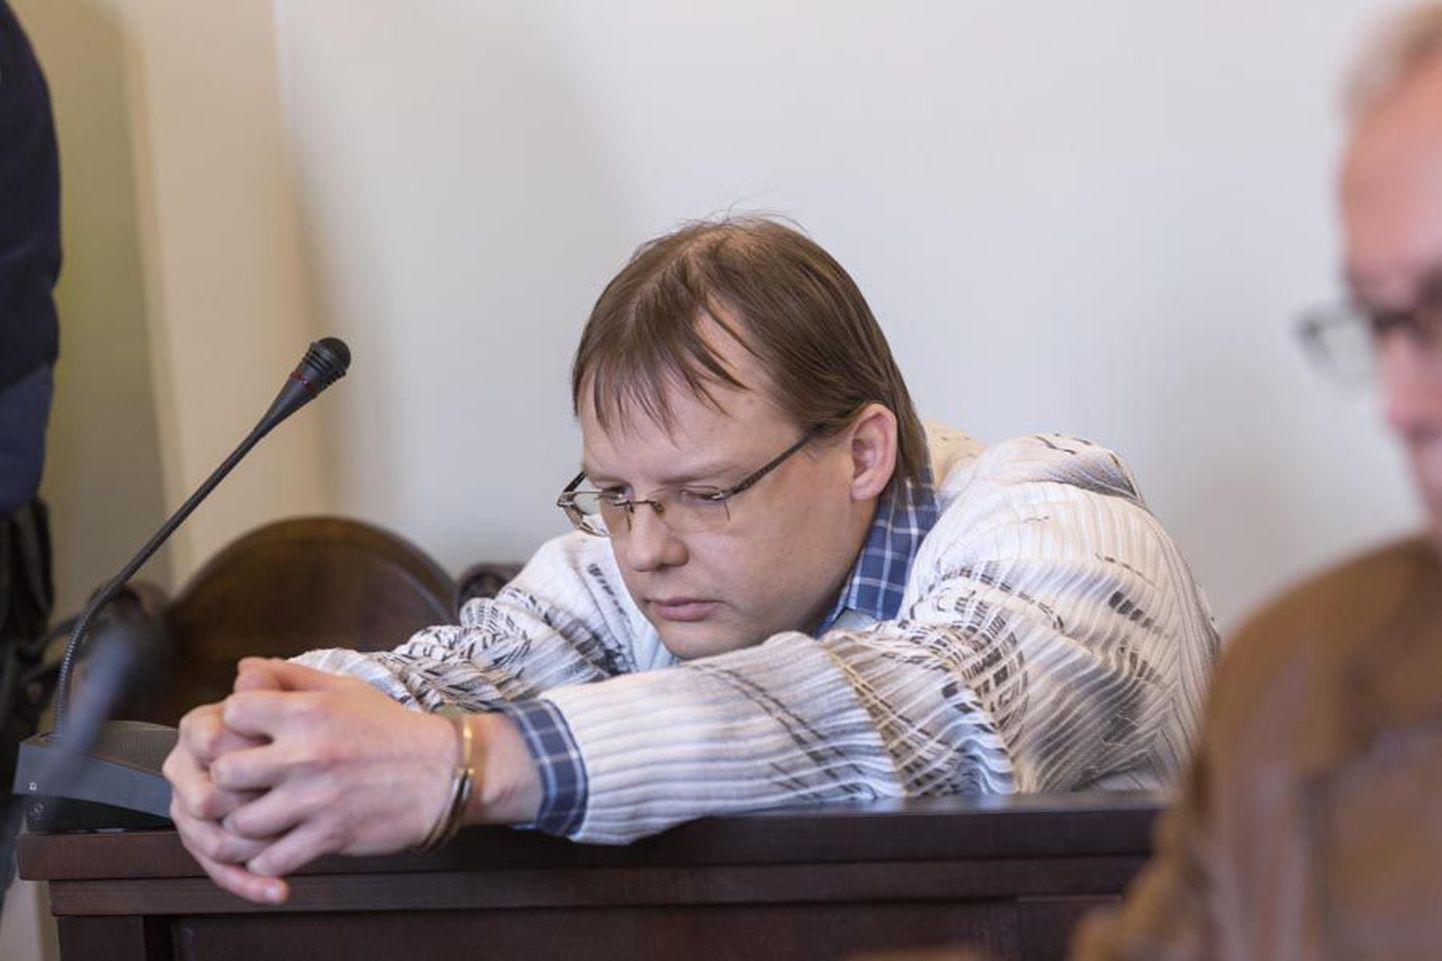 Rene Peterson avas aasta tagasi aprillis Viljandis Valuoja puiesteel ühe kortermaja trepikojas kahel korral tule ning haavas surmavalt 39-aastast meest. Kohus mõistis ta 14 aastaks vangi.